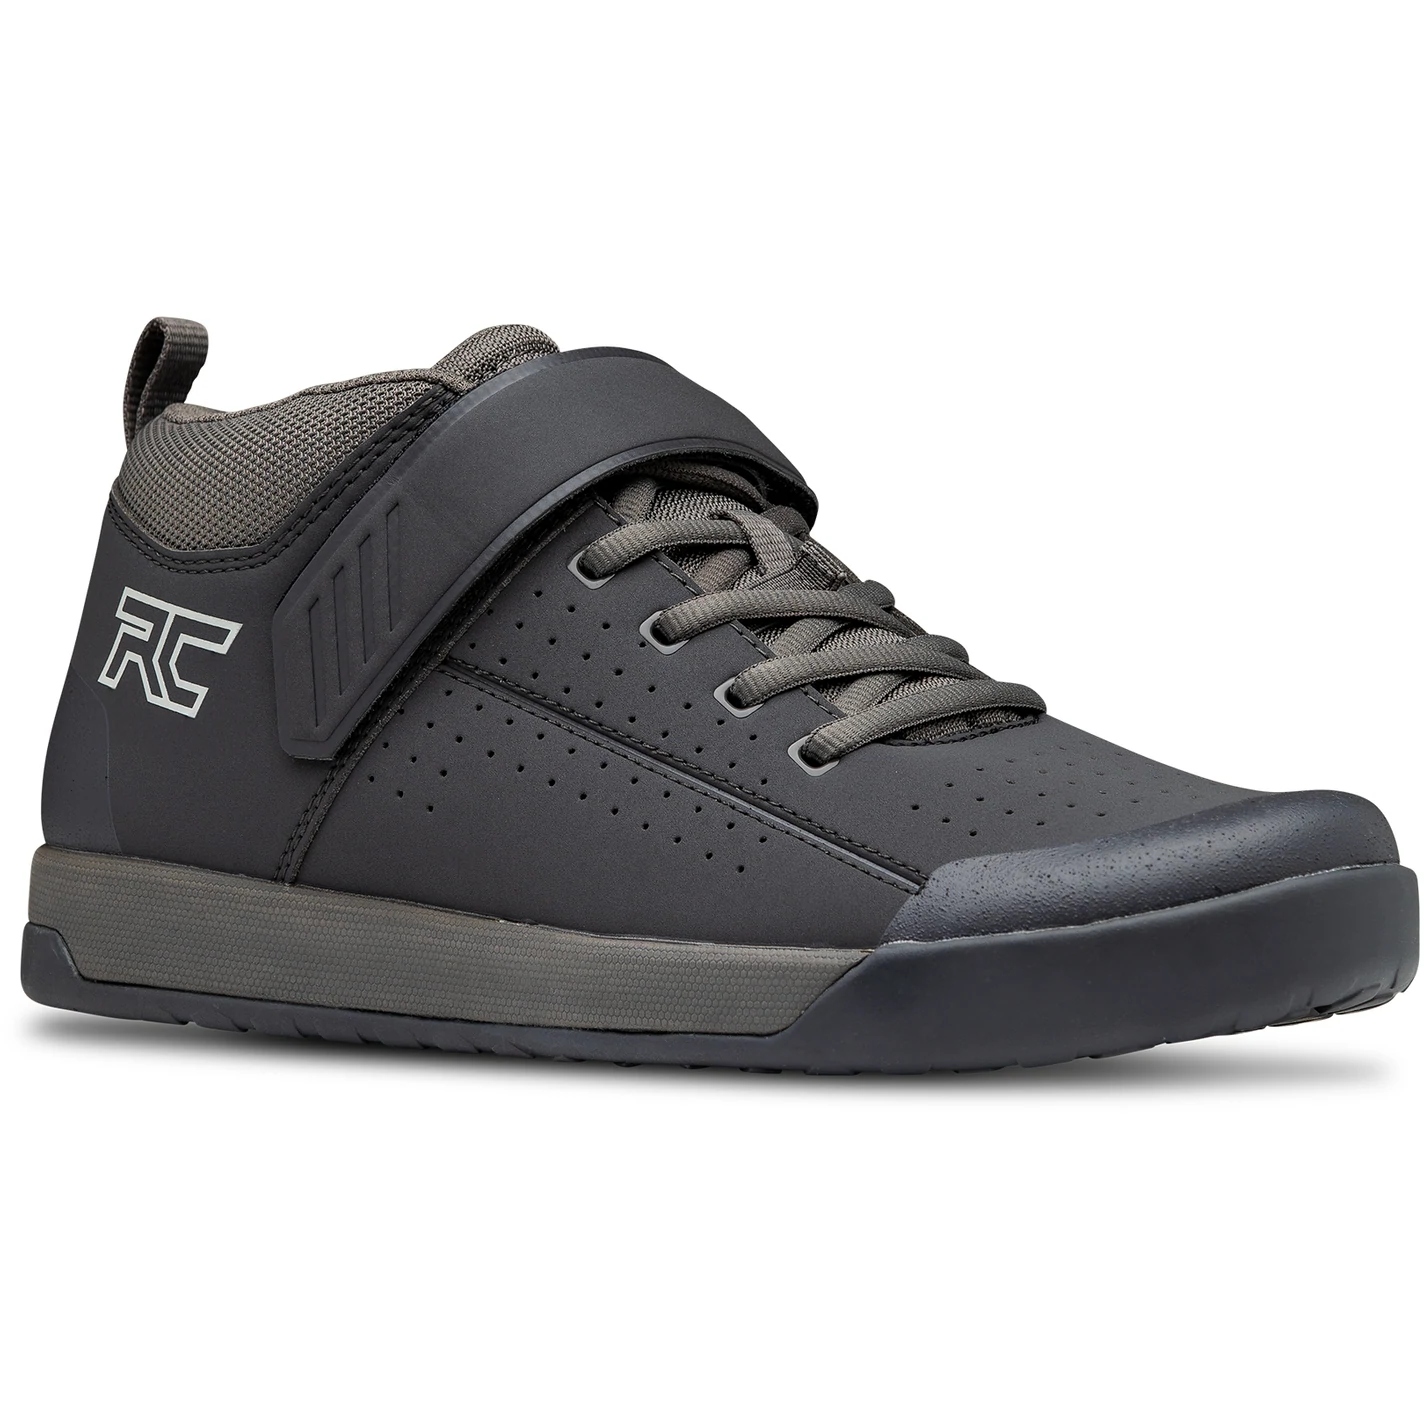 Productfoto van Ride Concepts Wildcat Men&#039;s Shoe - Black/Charcoal